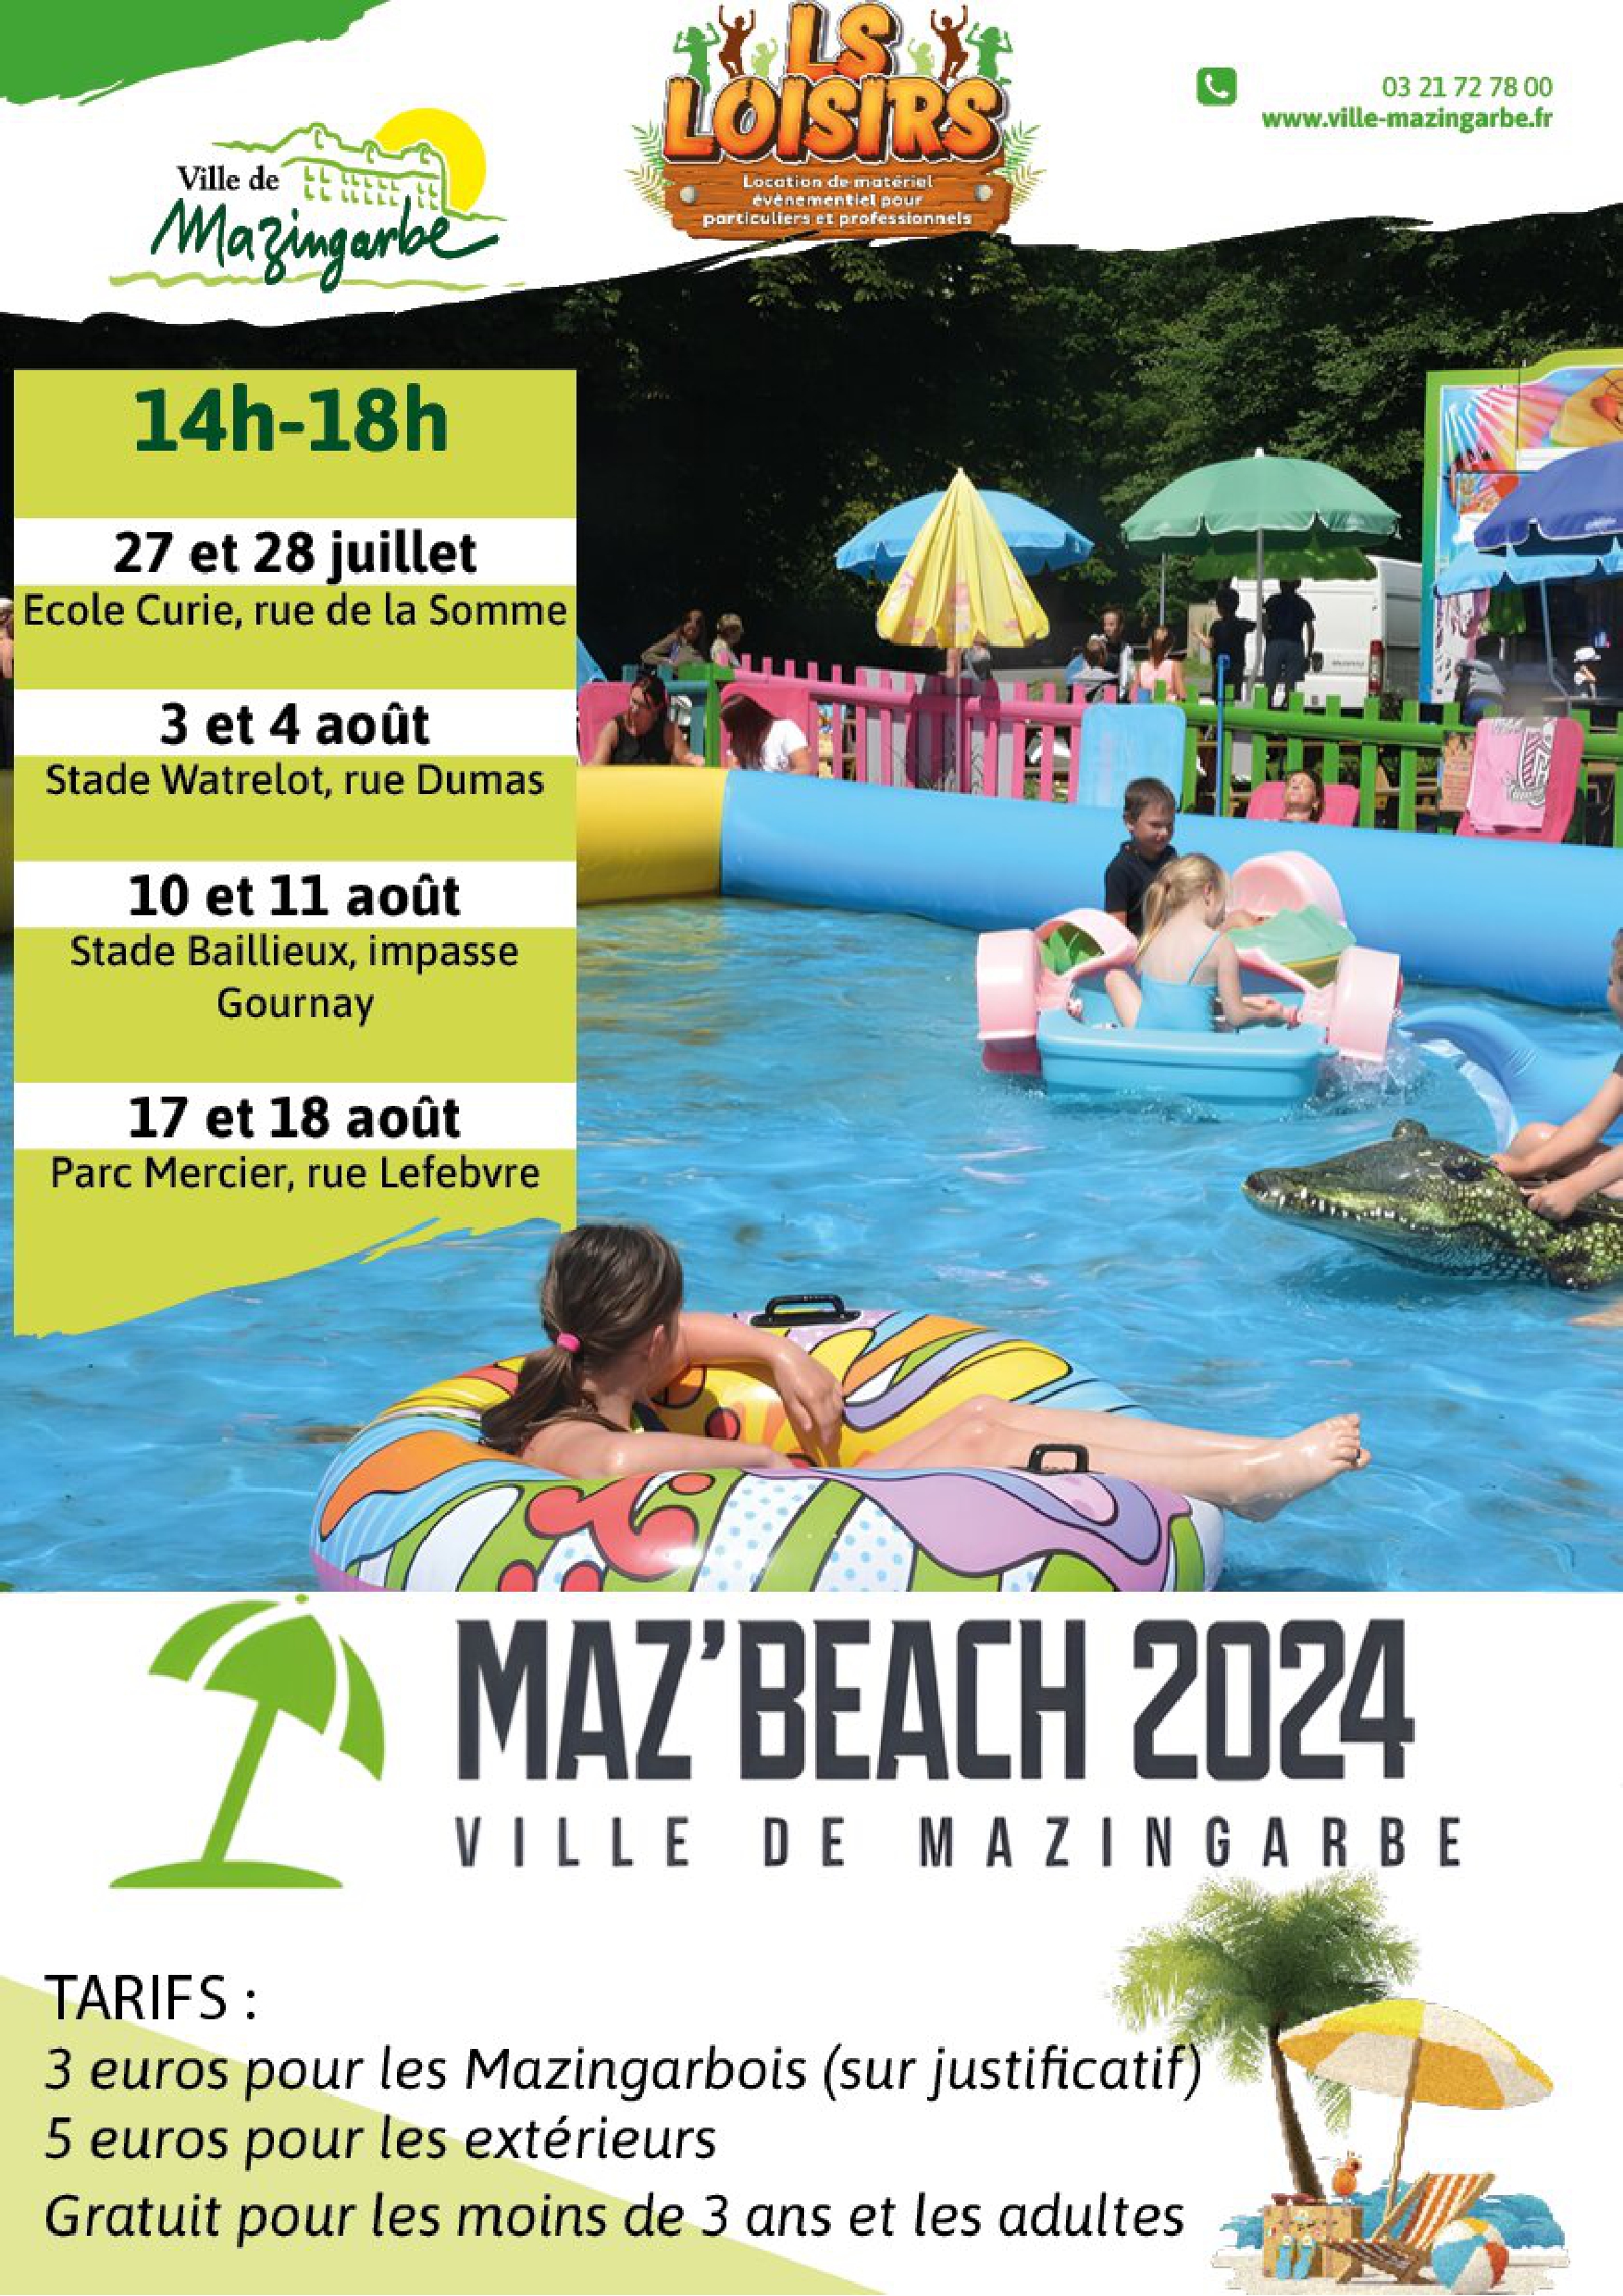 Proposition Maz Beach 2024 deuxime version Ajout logo LSL page 0001 Copie 2